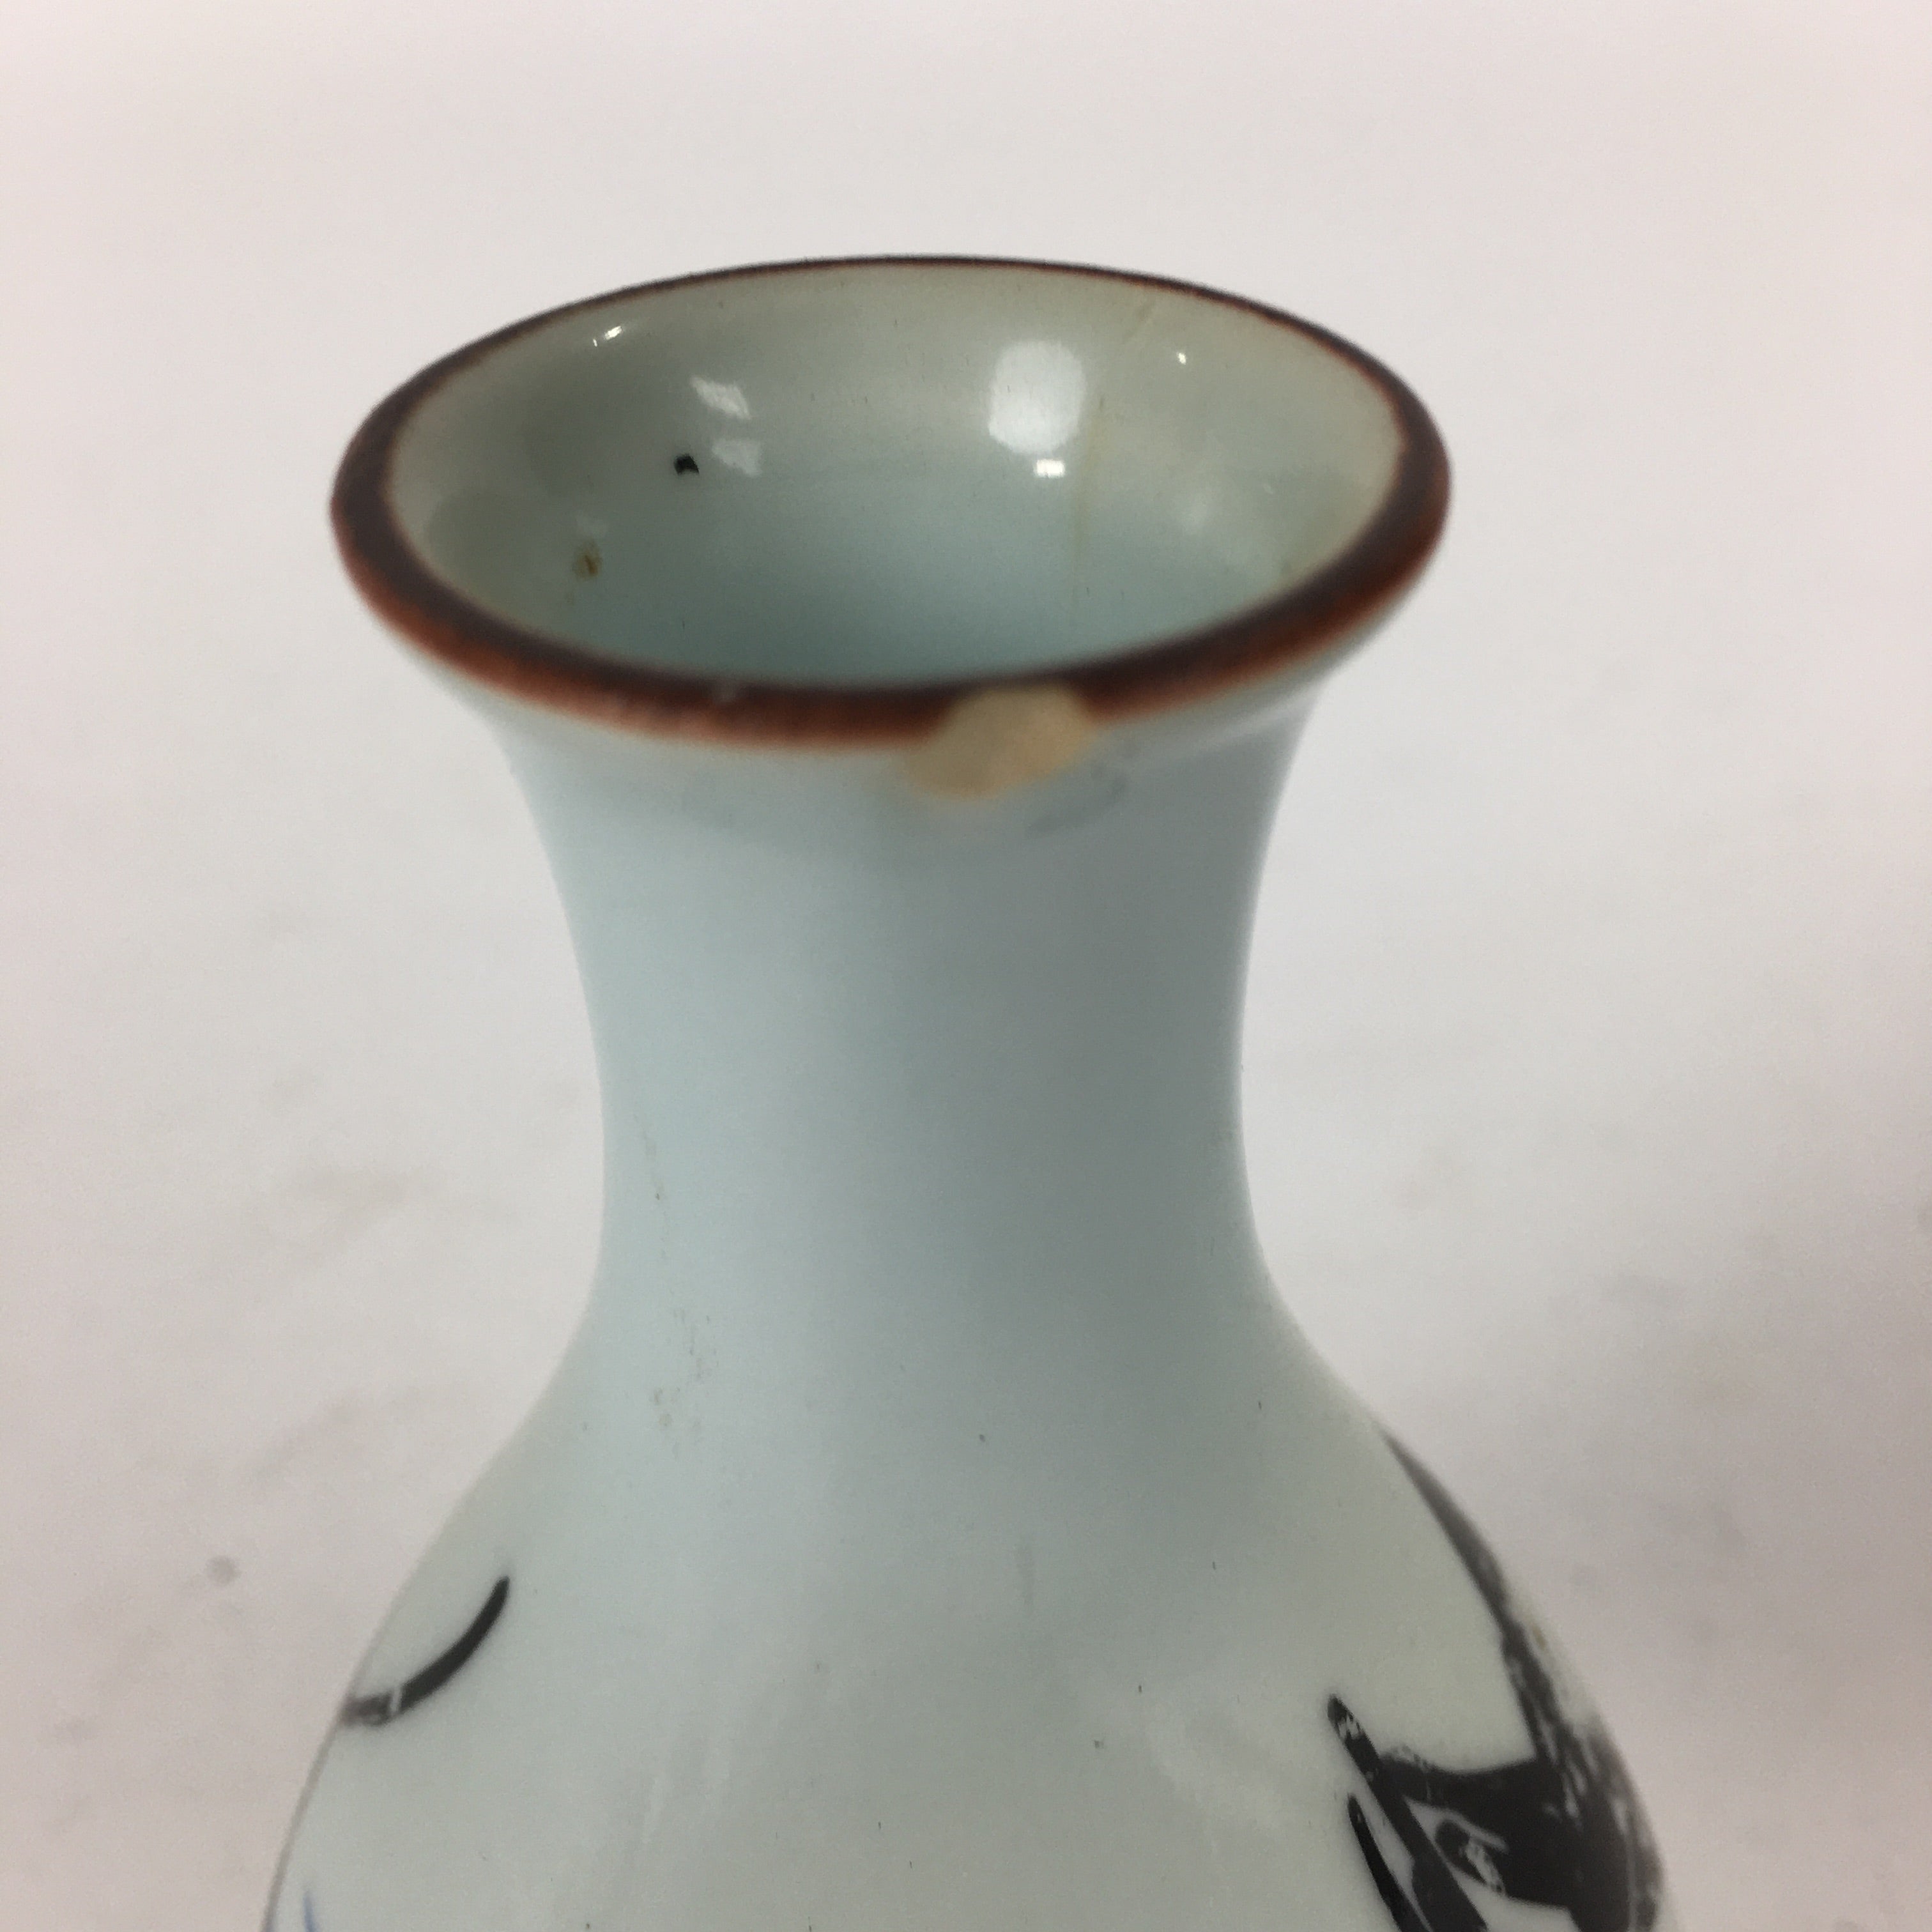 Japanese Arita Ware Porcelain Sake Bottle Vtg Blue Flower White Tokkuri TS339